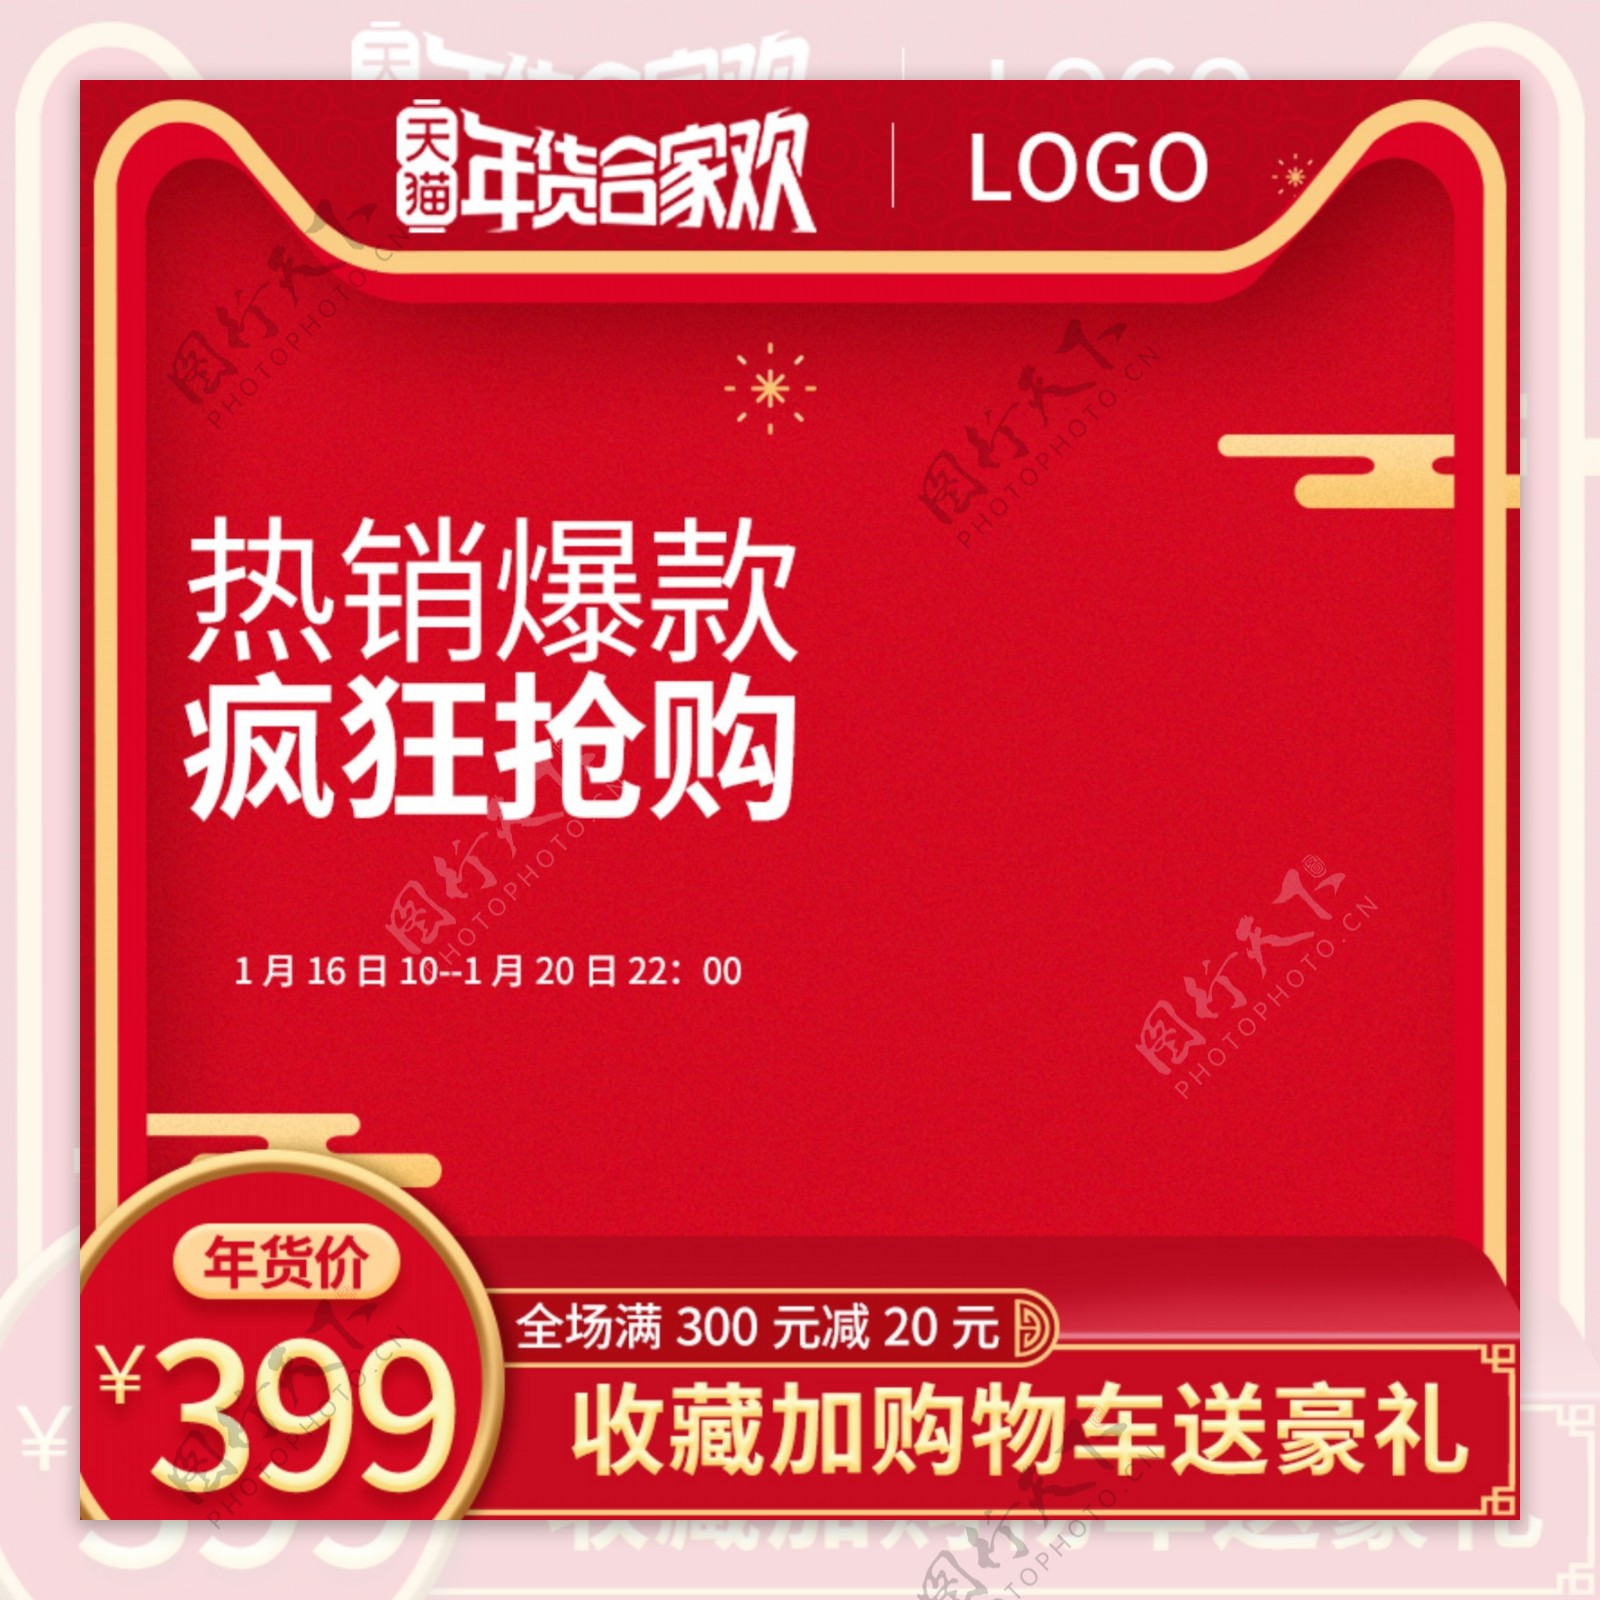 2019红色促销新年年货节直通车主图